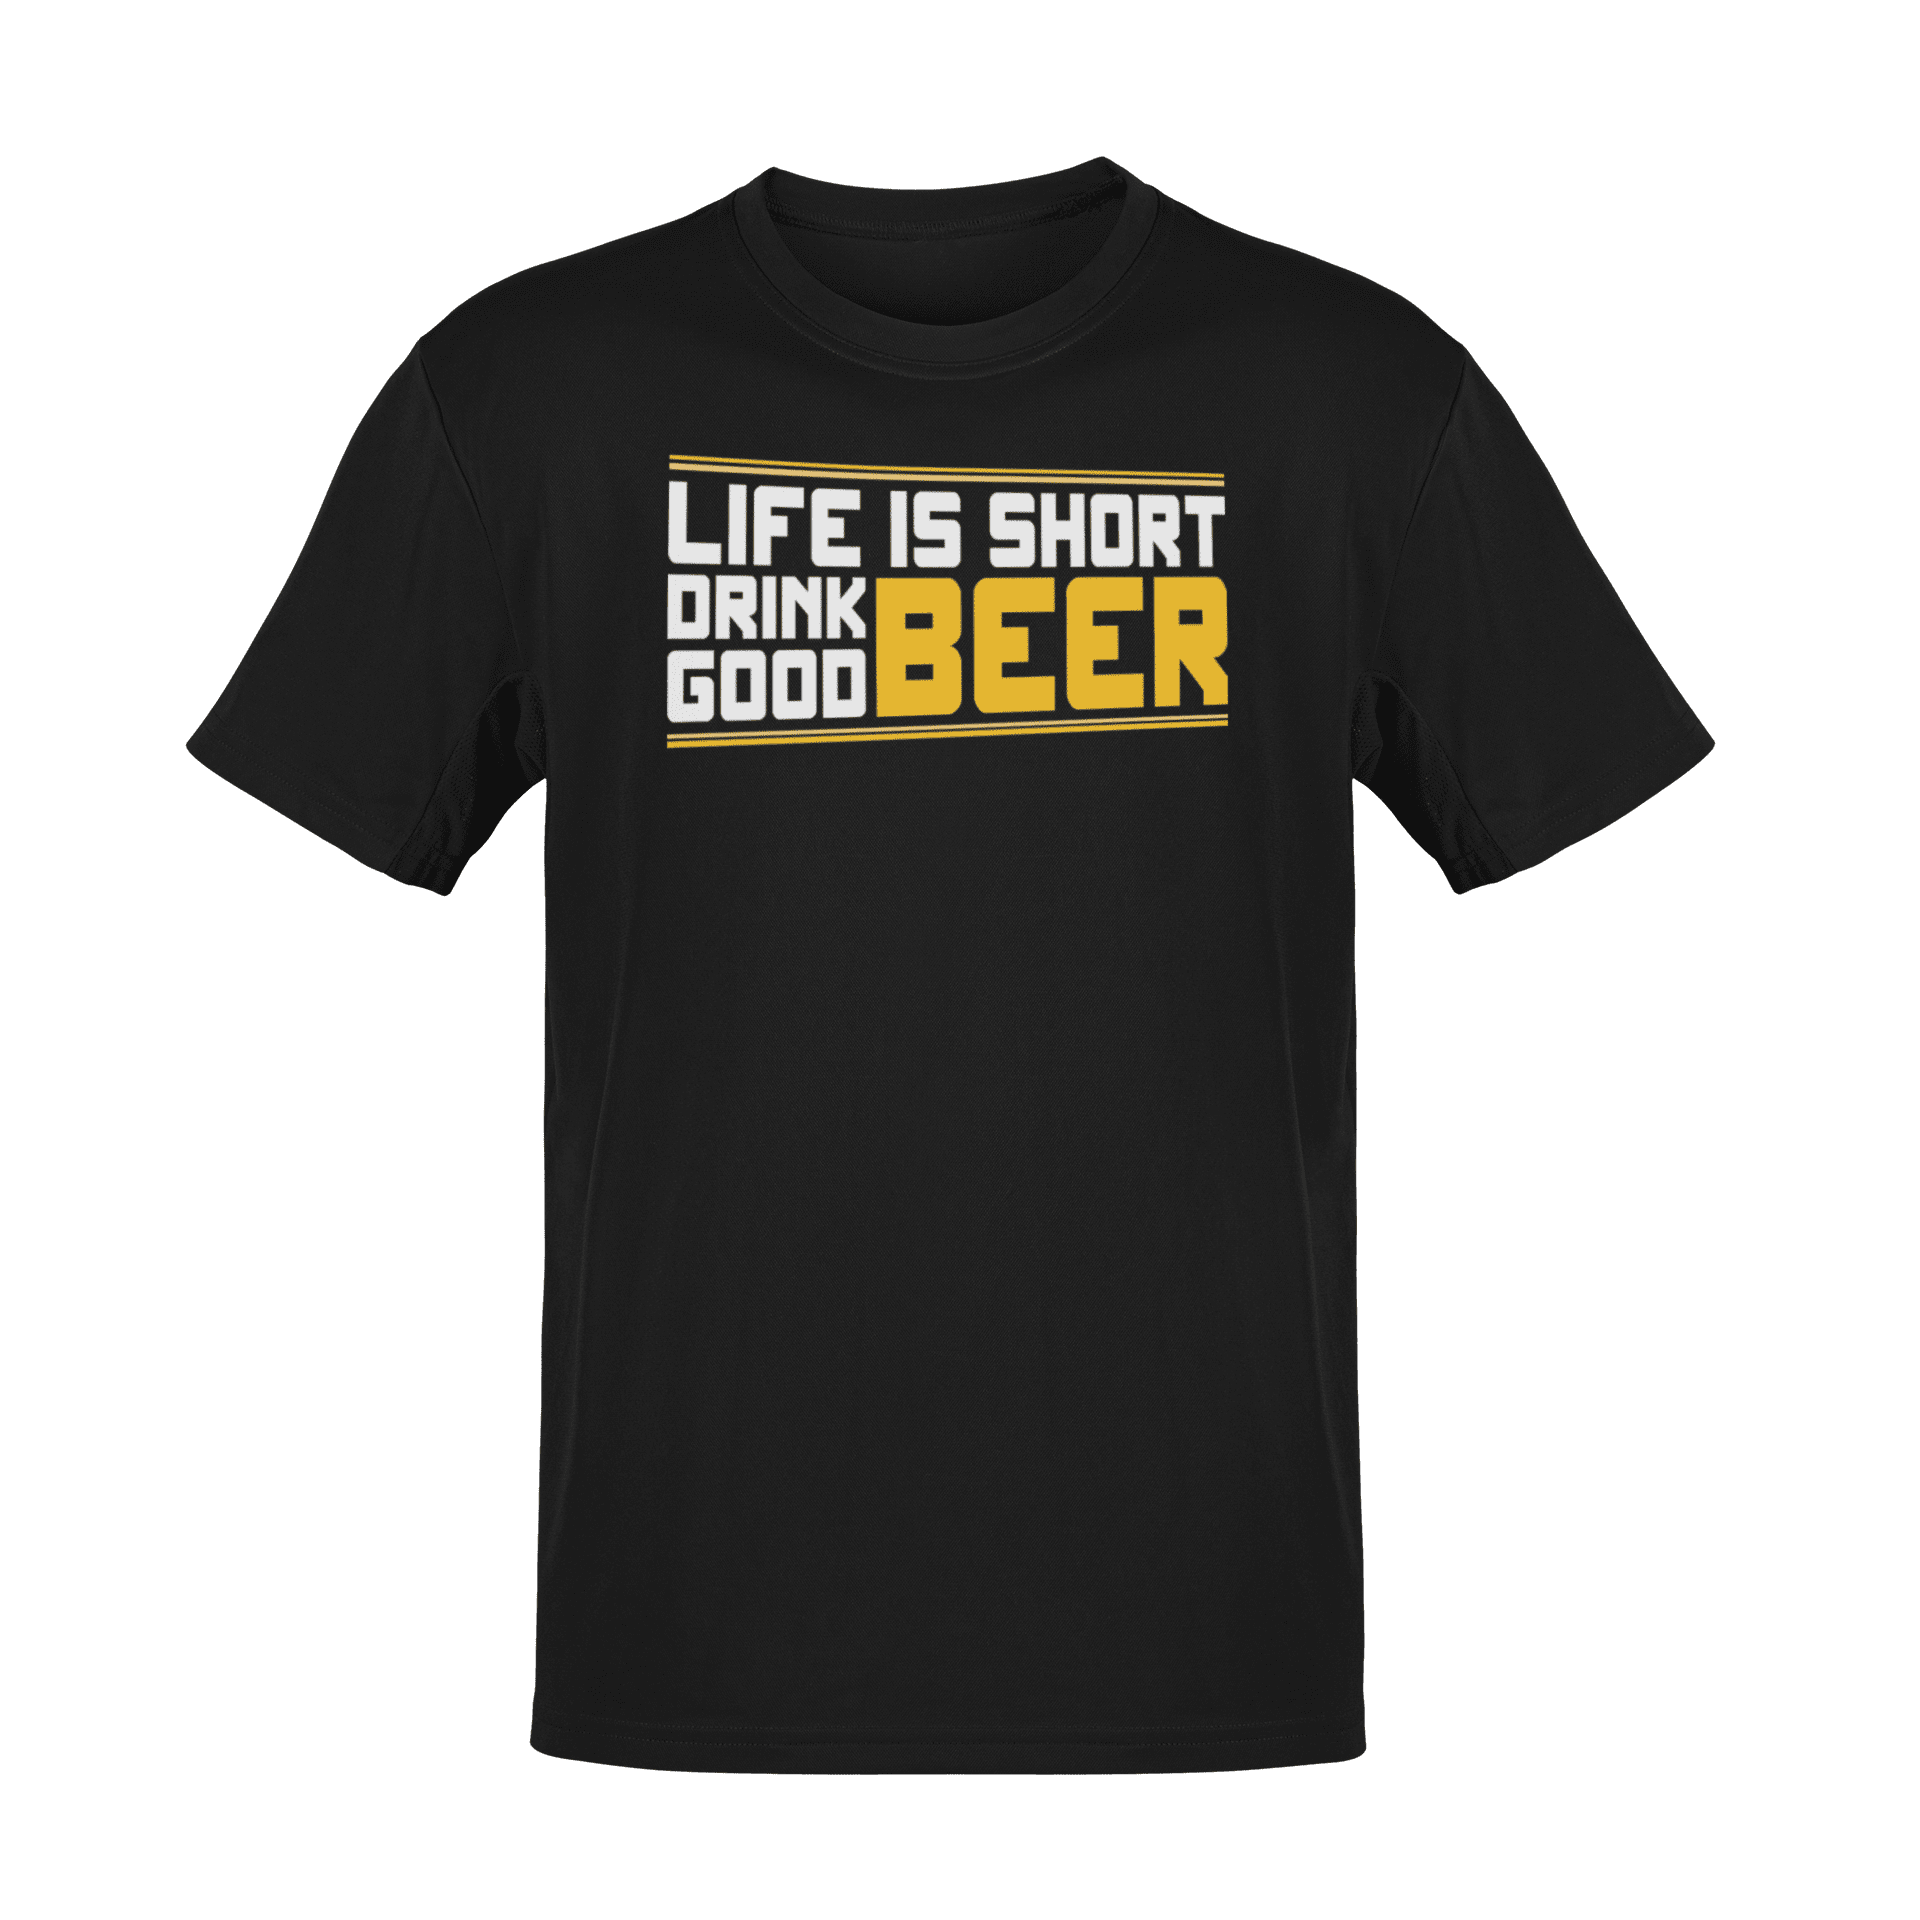 Joo head õlut